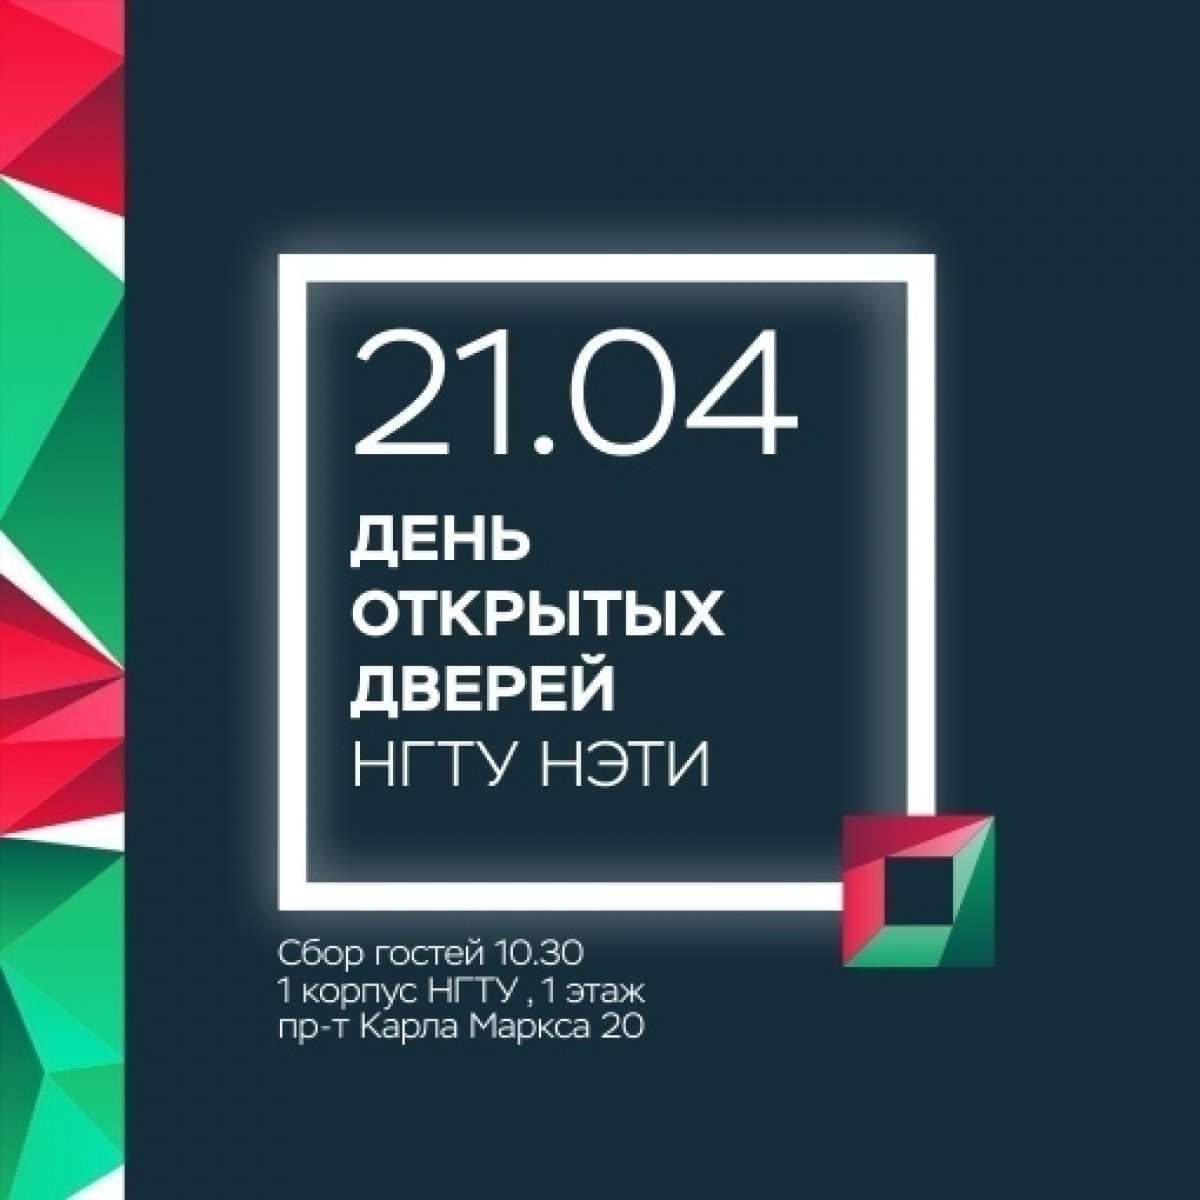 Осталось всего 3 дня, подробности на open.nstu.ru 🙌🏻